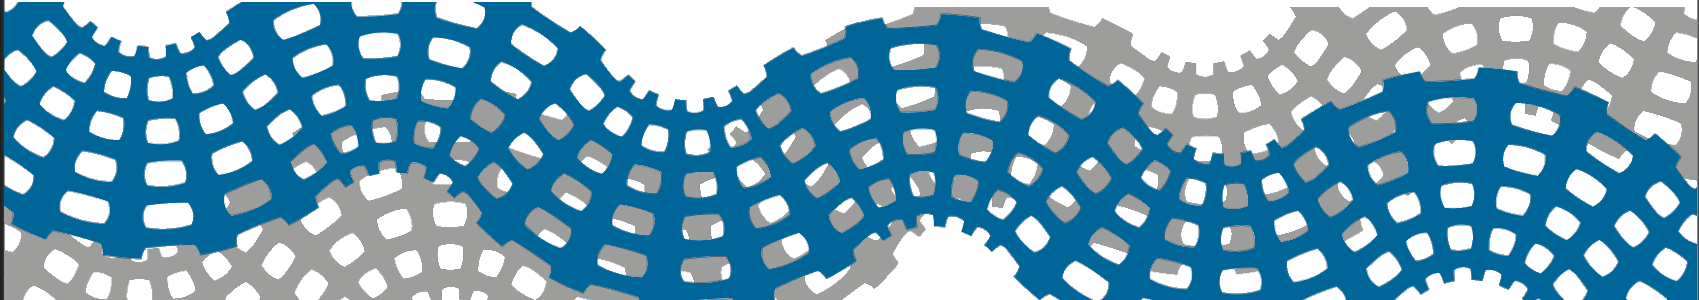 Symbolische Darstellung von zwei Mikrostrukturen in den Farben Blau und Grau